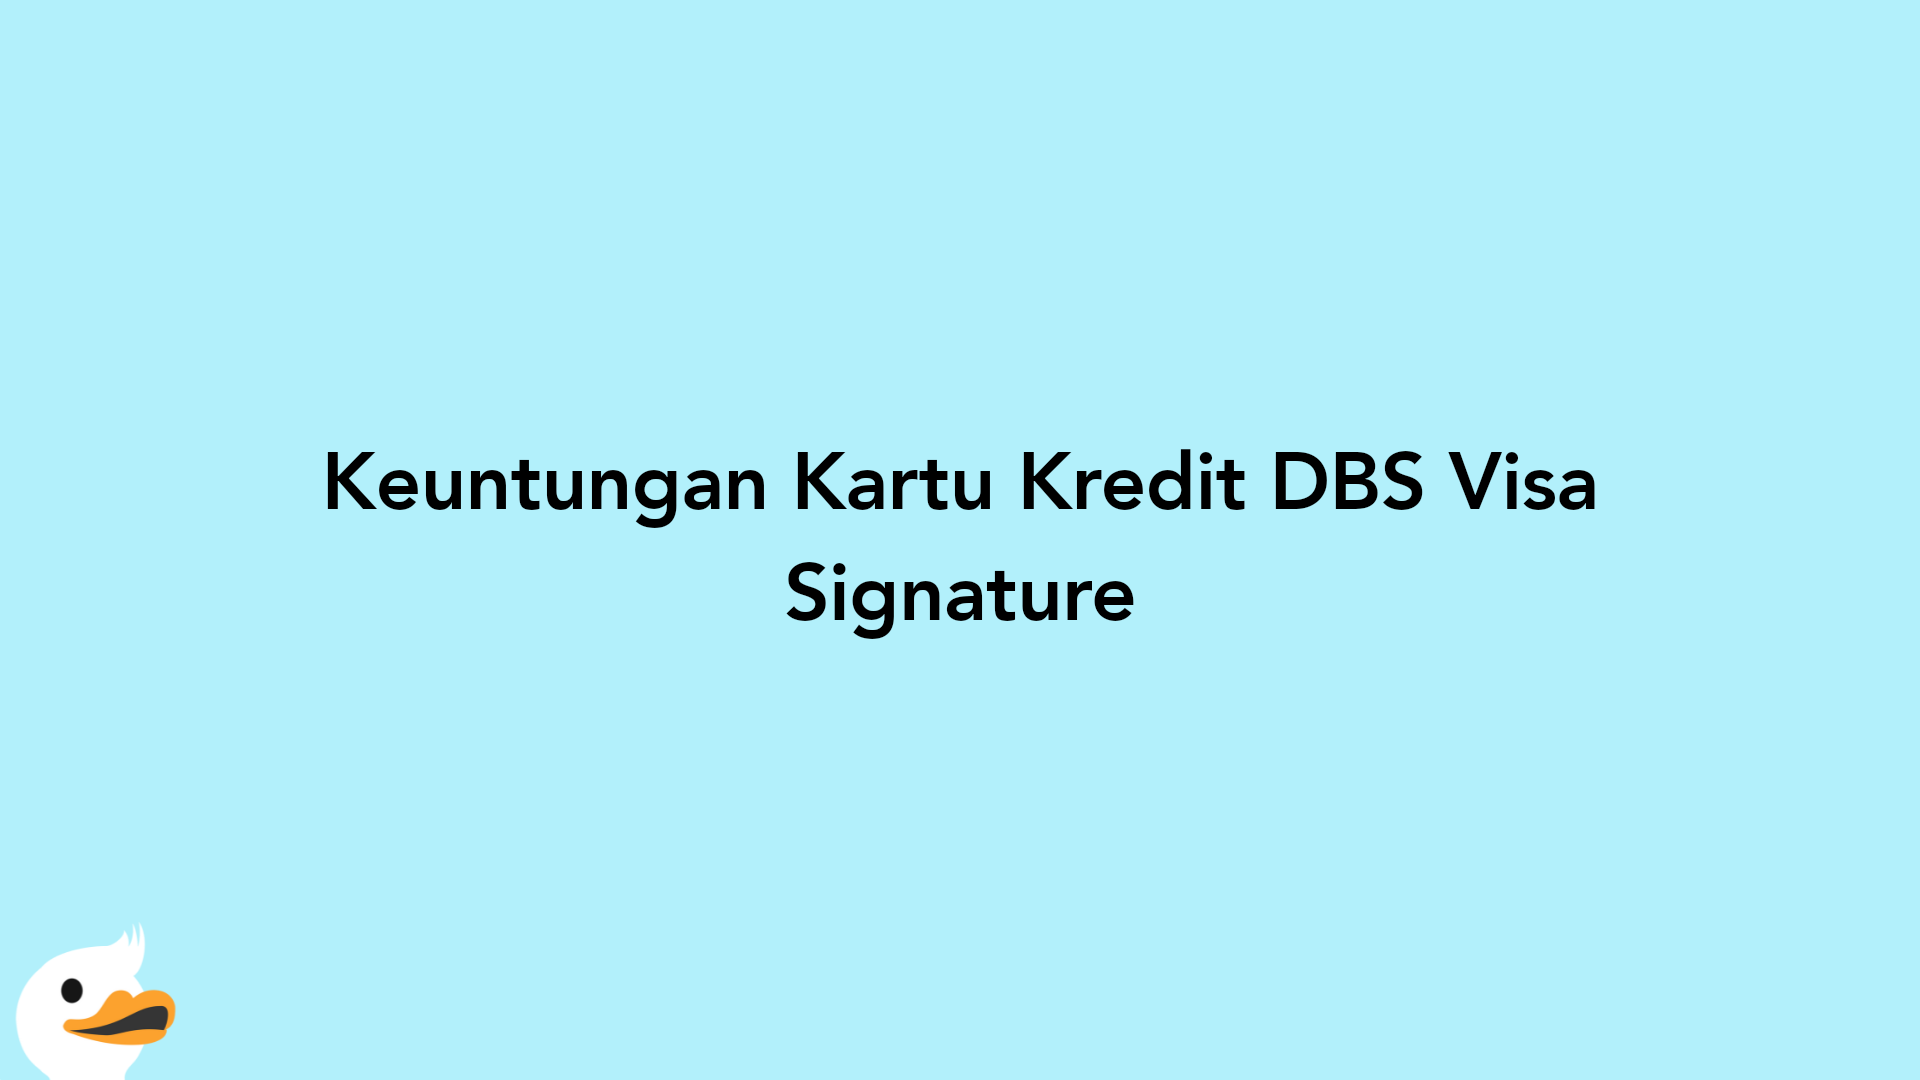 Keuntungan Kartu Kredit DBS Visa Signature